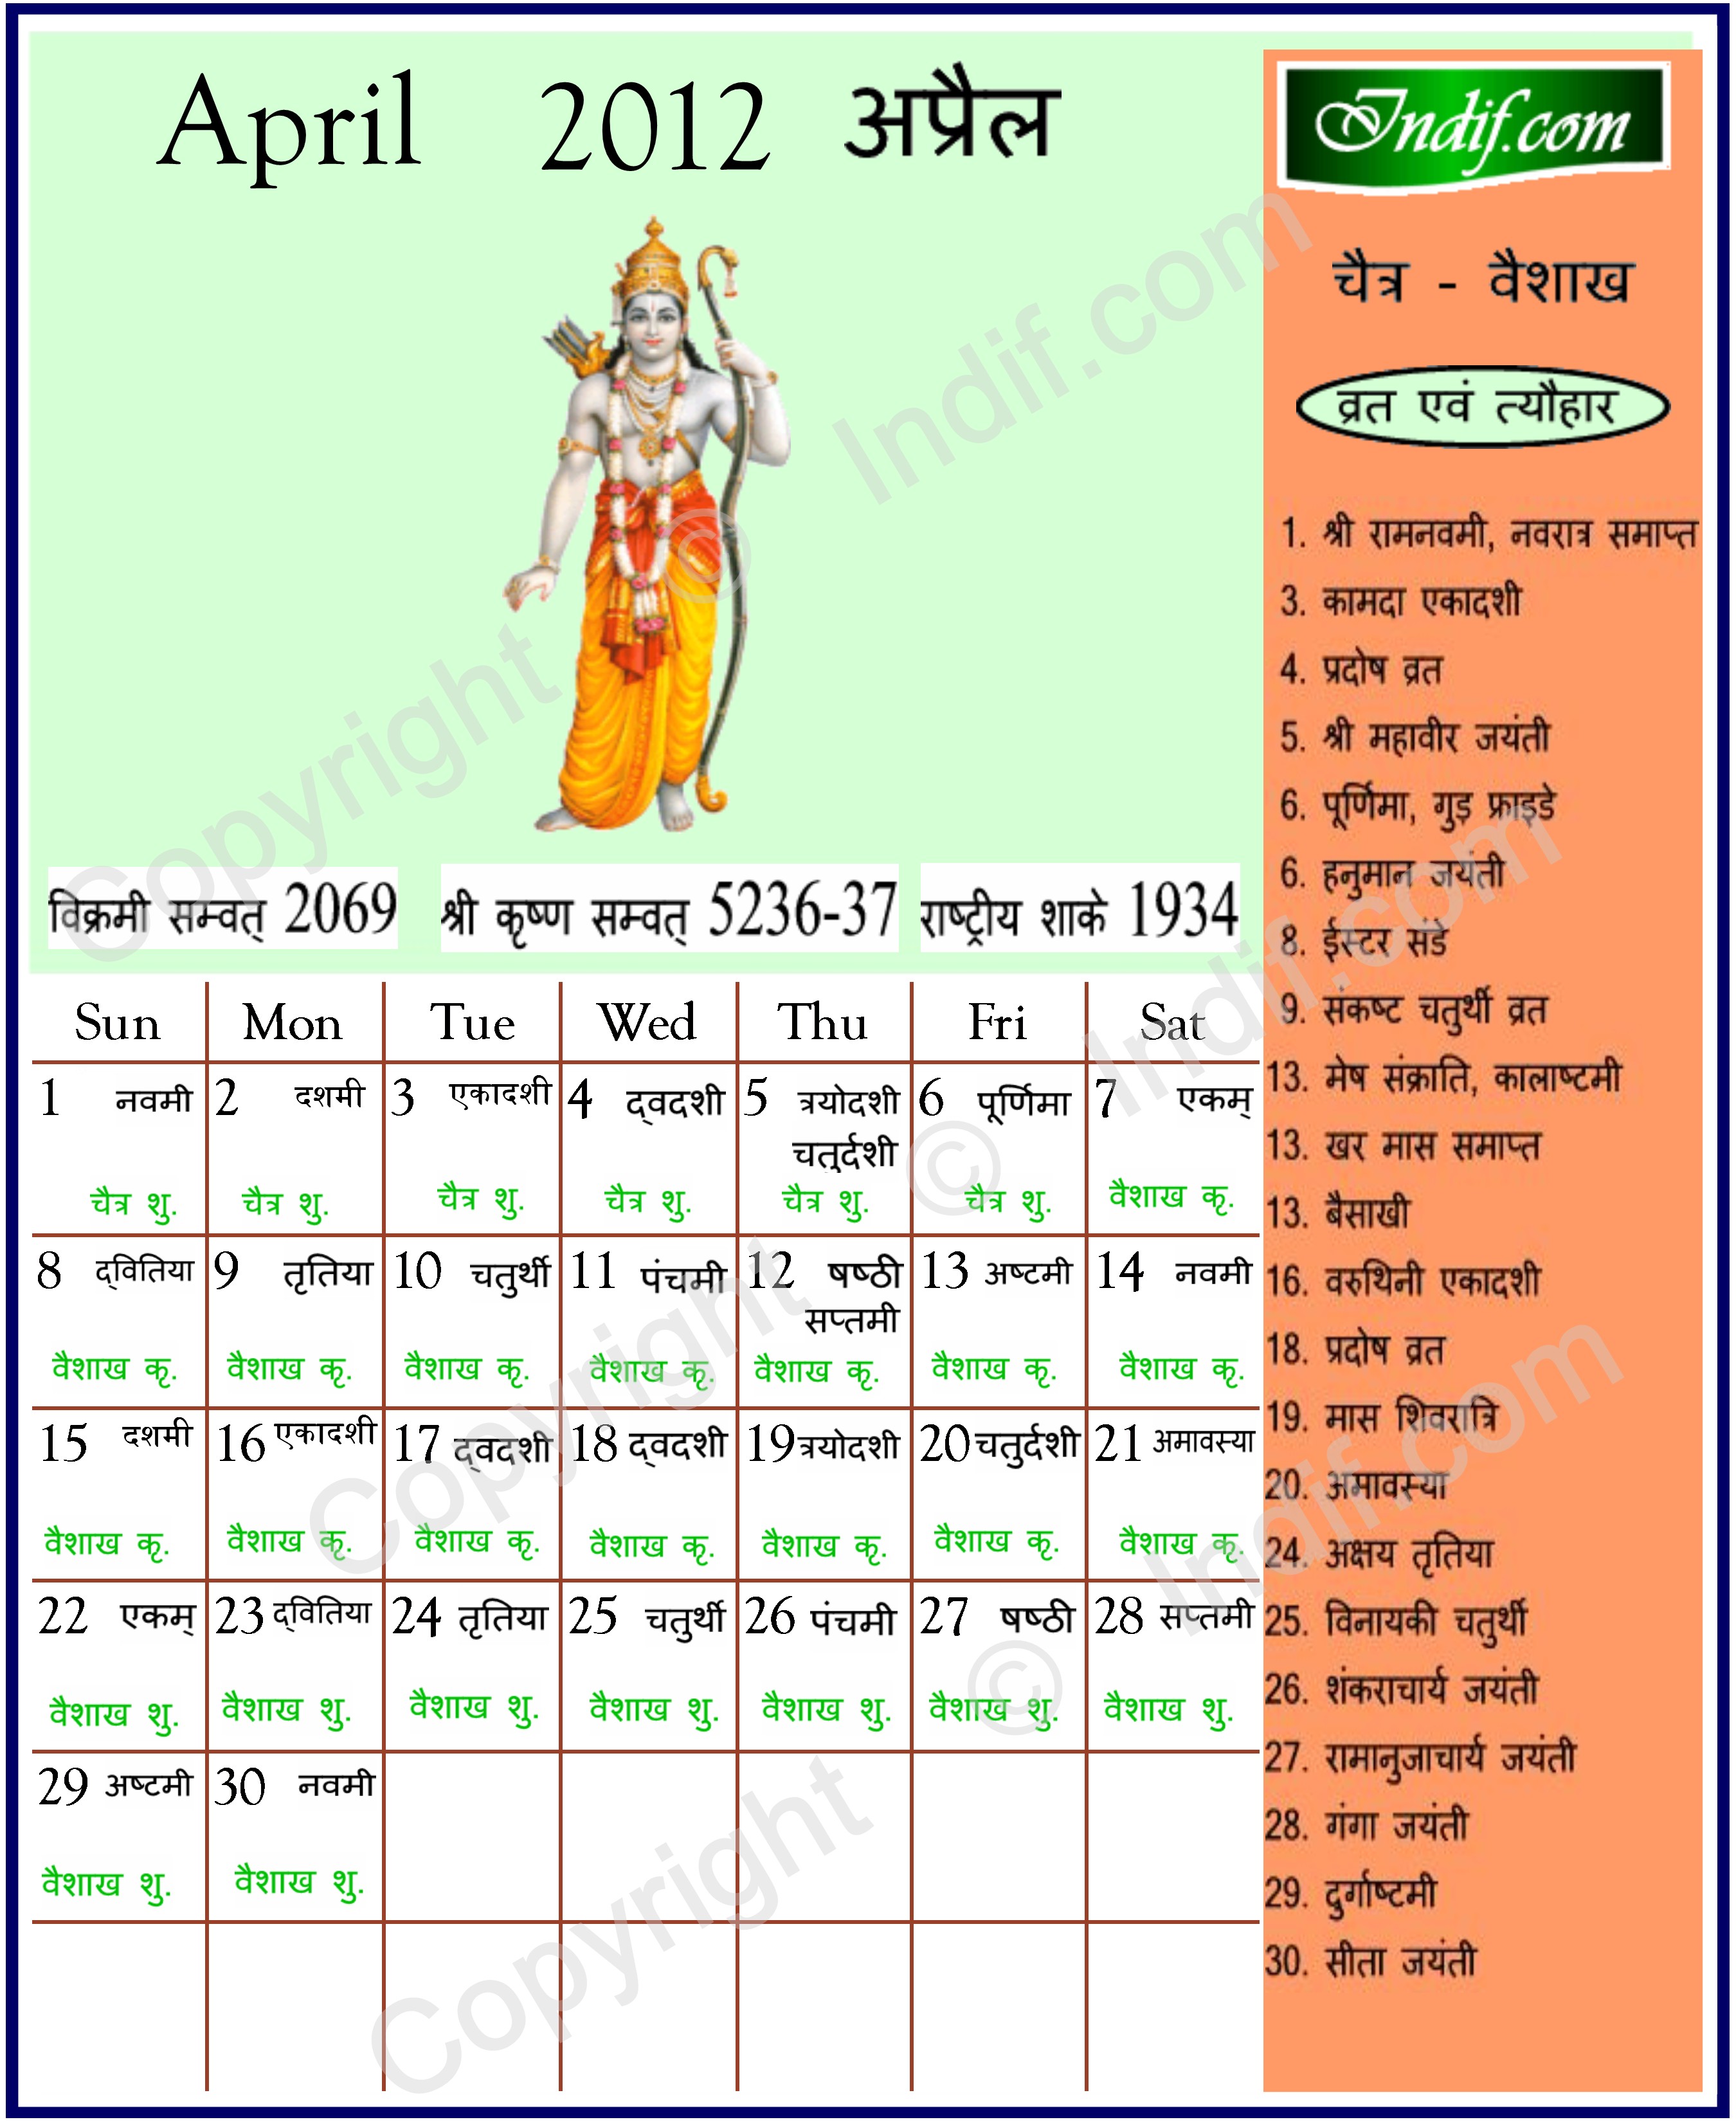 April 2012 Indian Calendar, Hindu Calendar